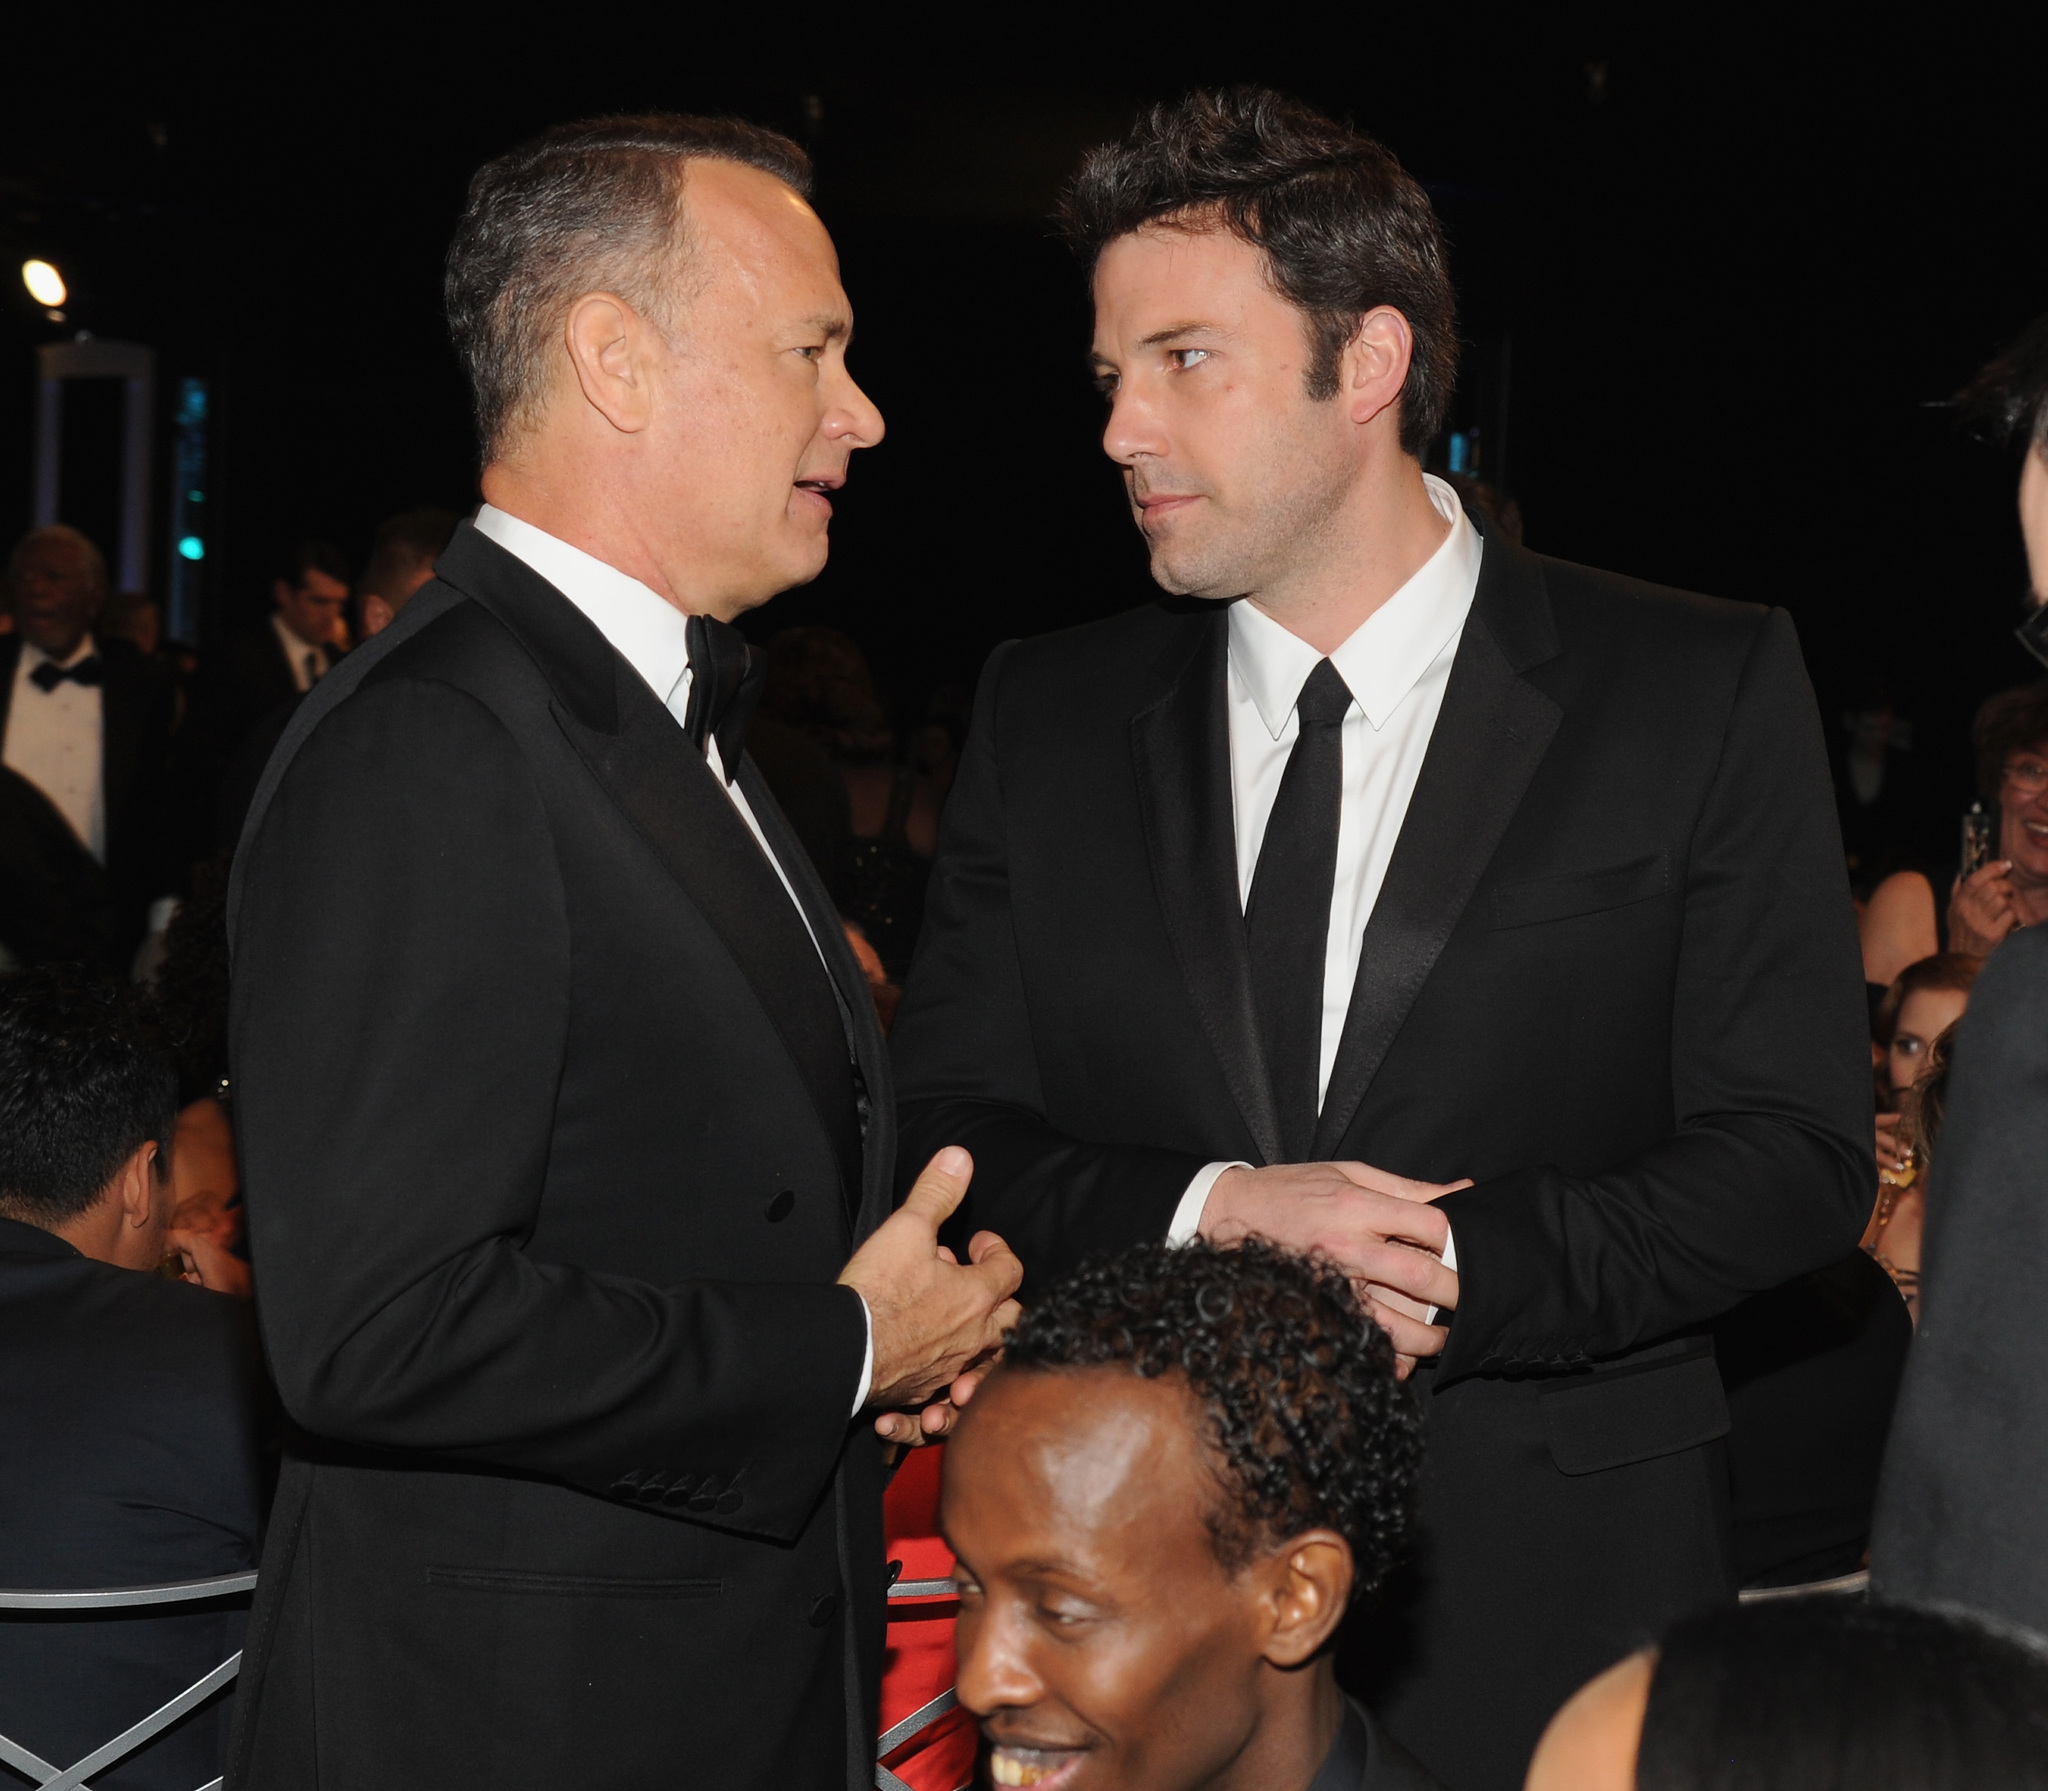 Tom Hanks and Ben Affleck